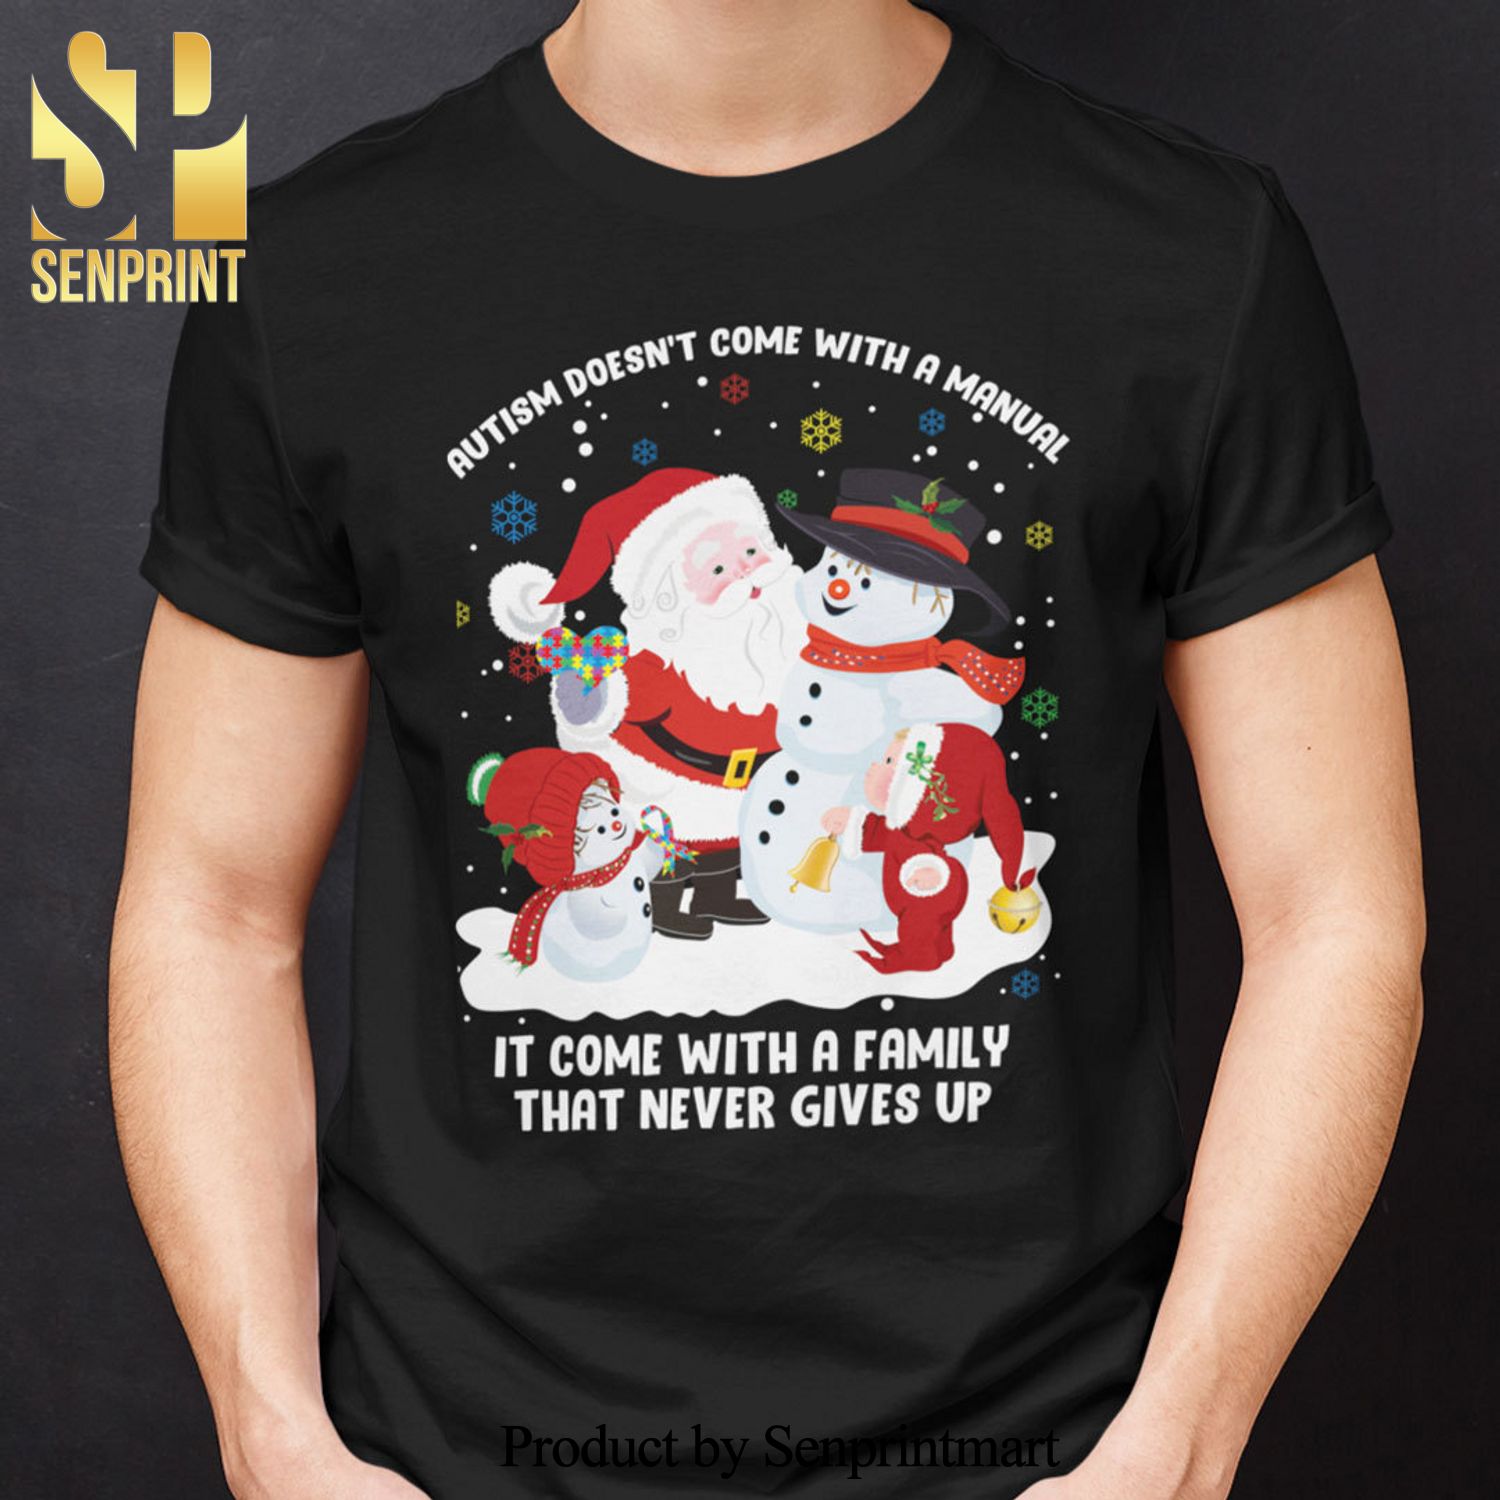 Christmas Autism Christmas Gifts Shirts Autism Awareness Tee